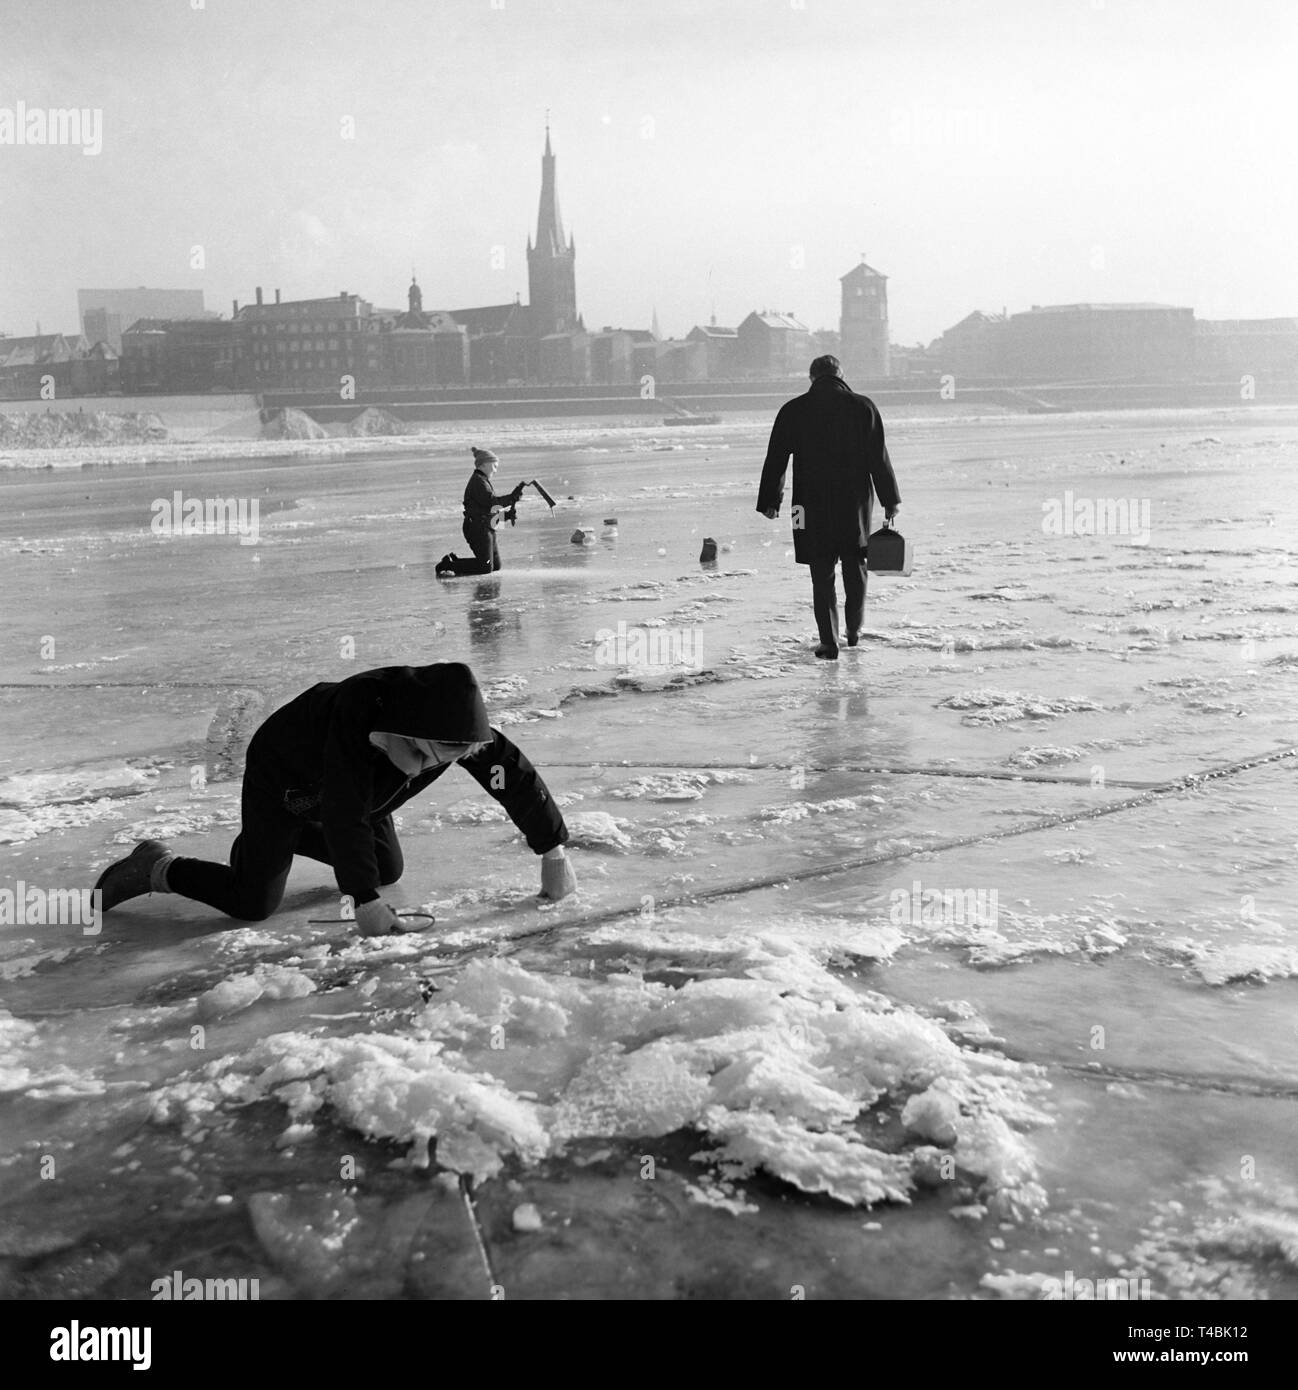 Eine eisdecke von 80 Kilometer Länge hat am Niederrhein auf Grund der Witterungsbedingungen entwickelt. Das Bild zeigt einen Mann, der für einen Spaziergang über den zugefrorenen Rhein am 22. Januar 1963 geht, im Hintergrund der Stadt Düsseldorf. | Verwendung weltweit Stockfoto